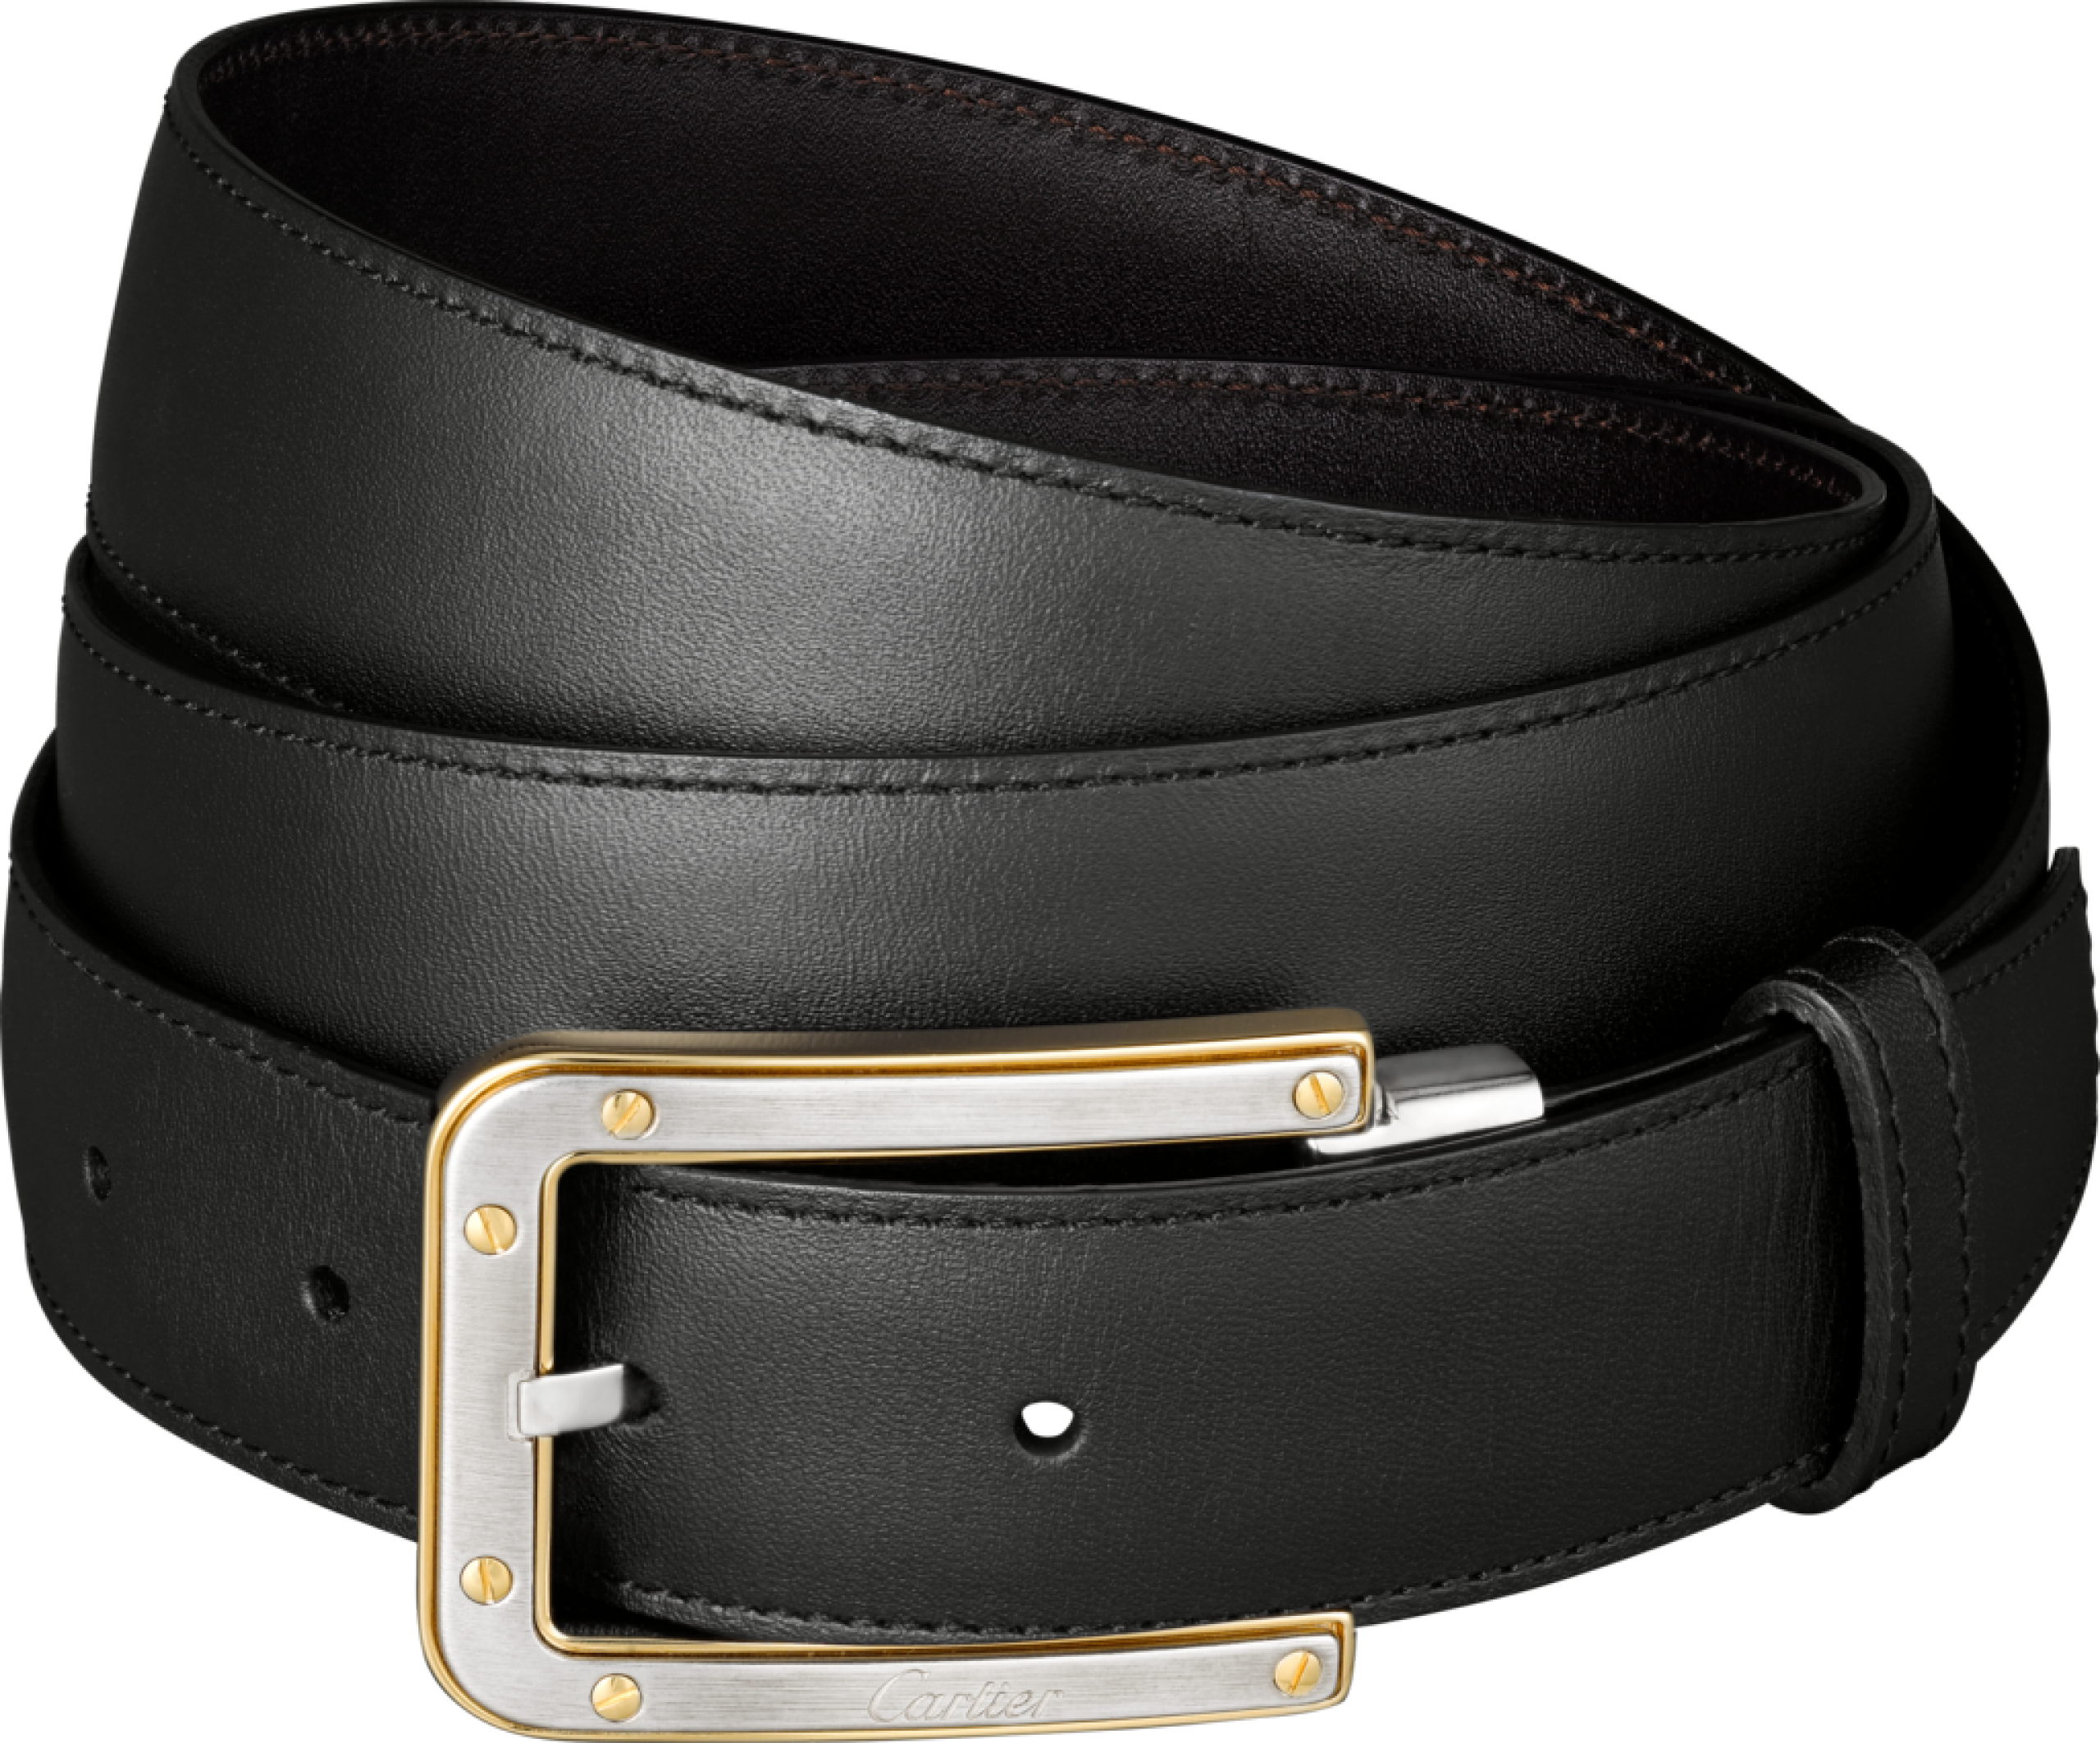 belts slim black belt with golden buckles png image #39074